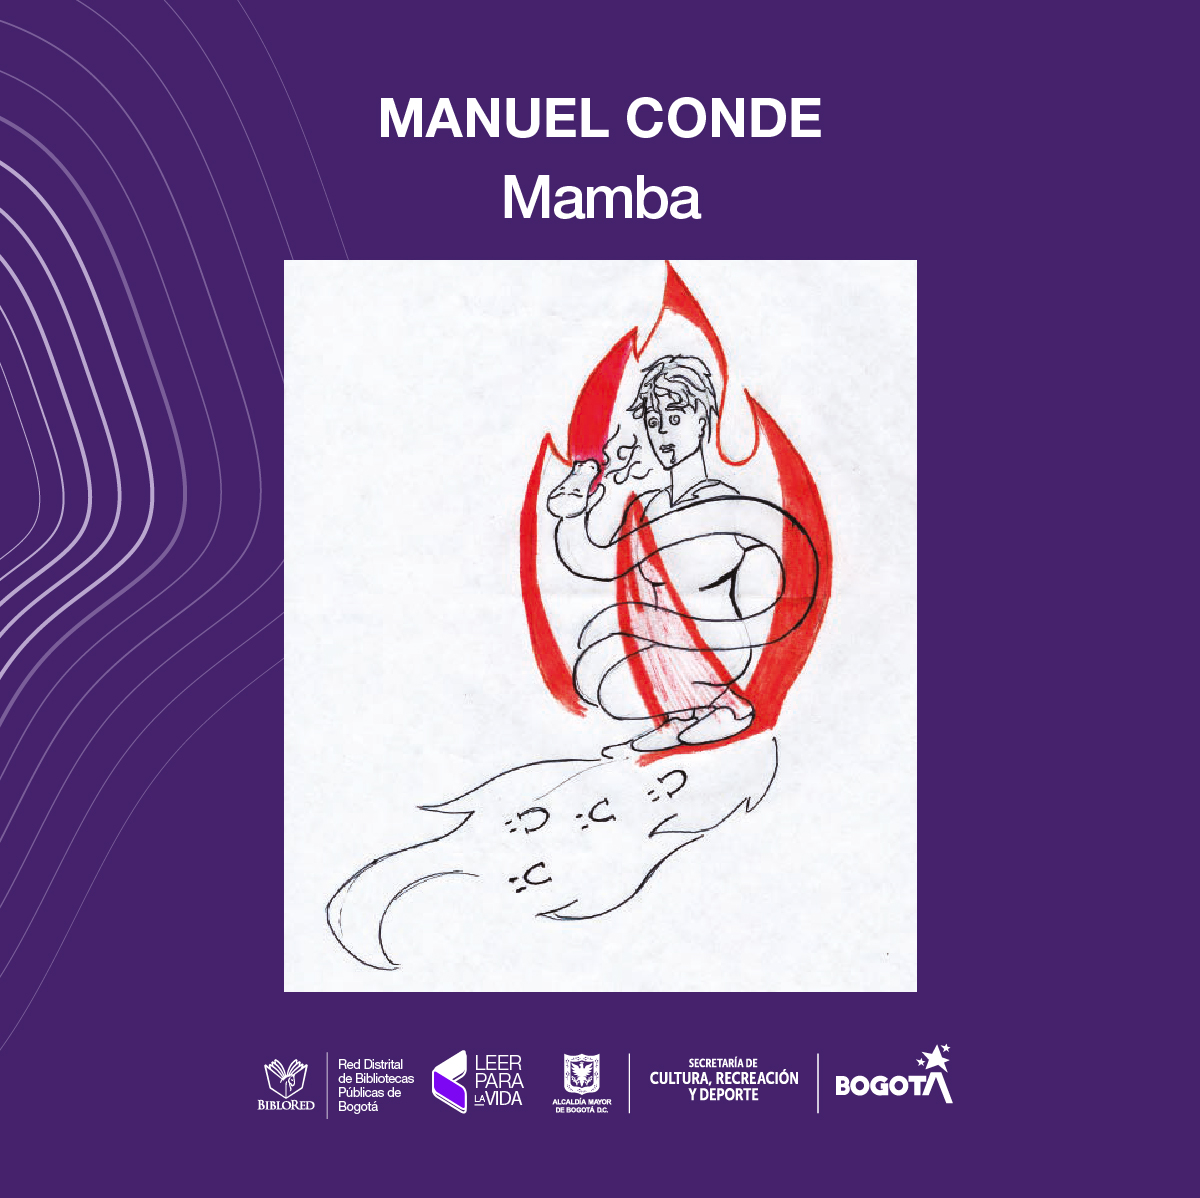 Manuel Conde